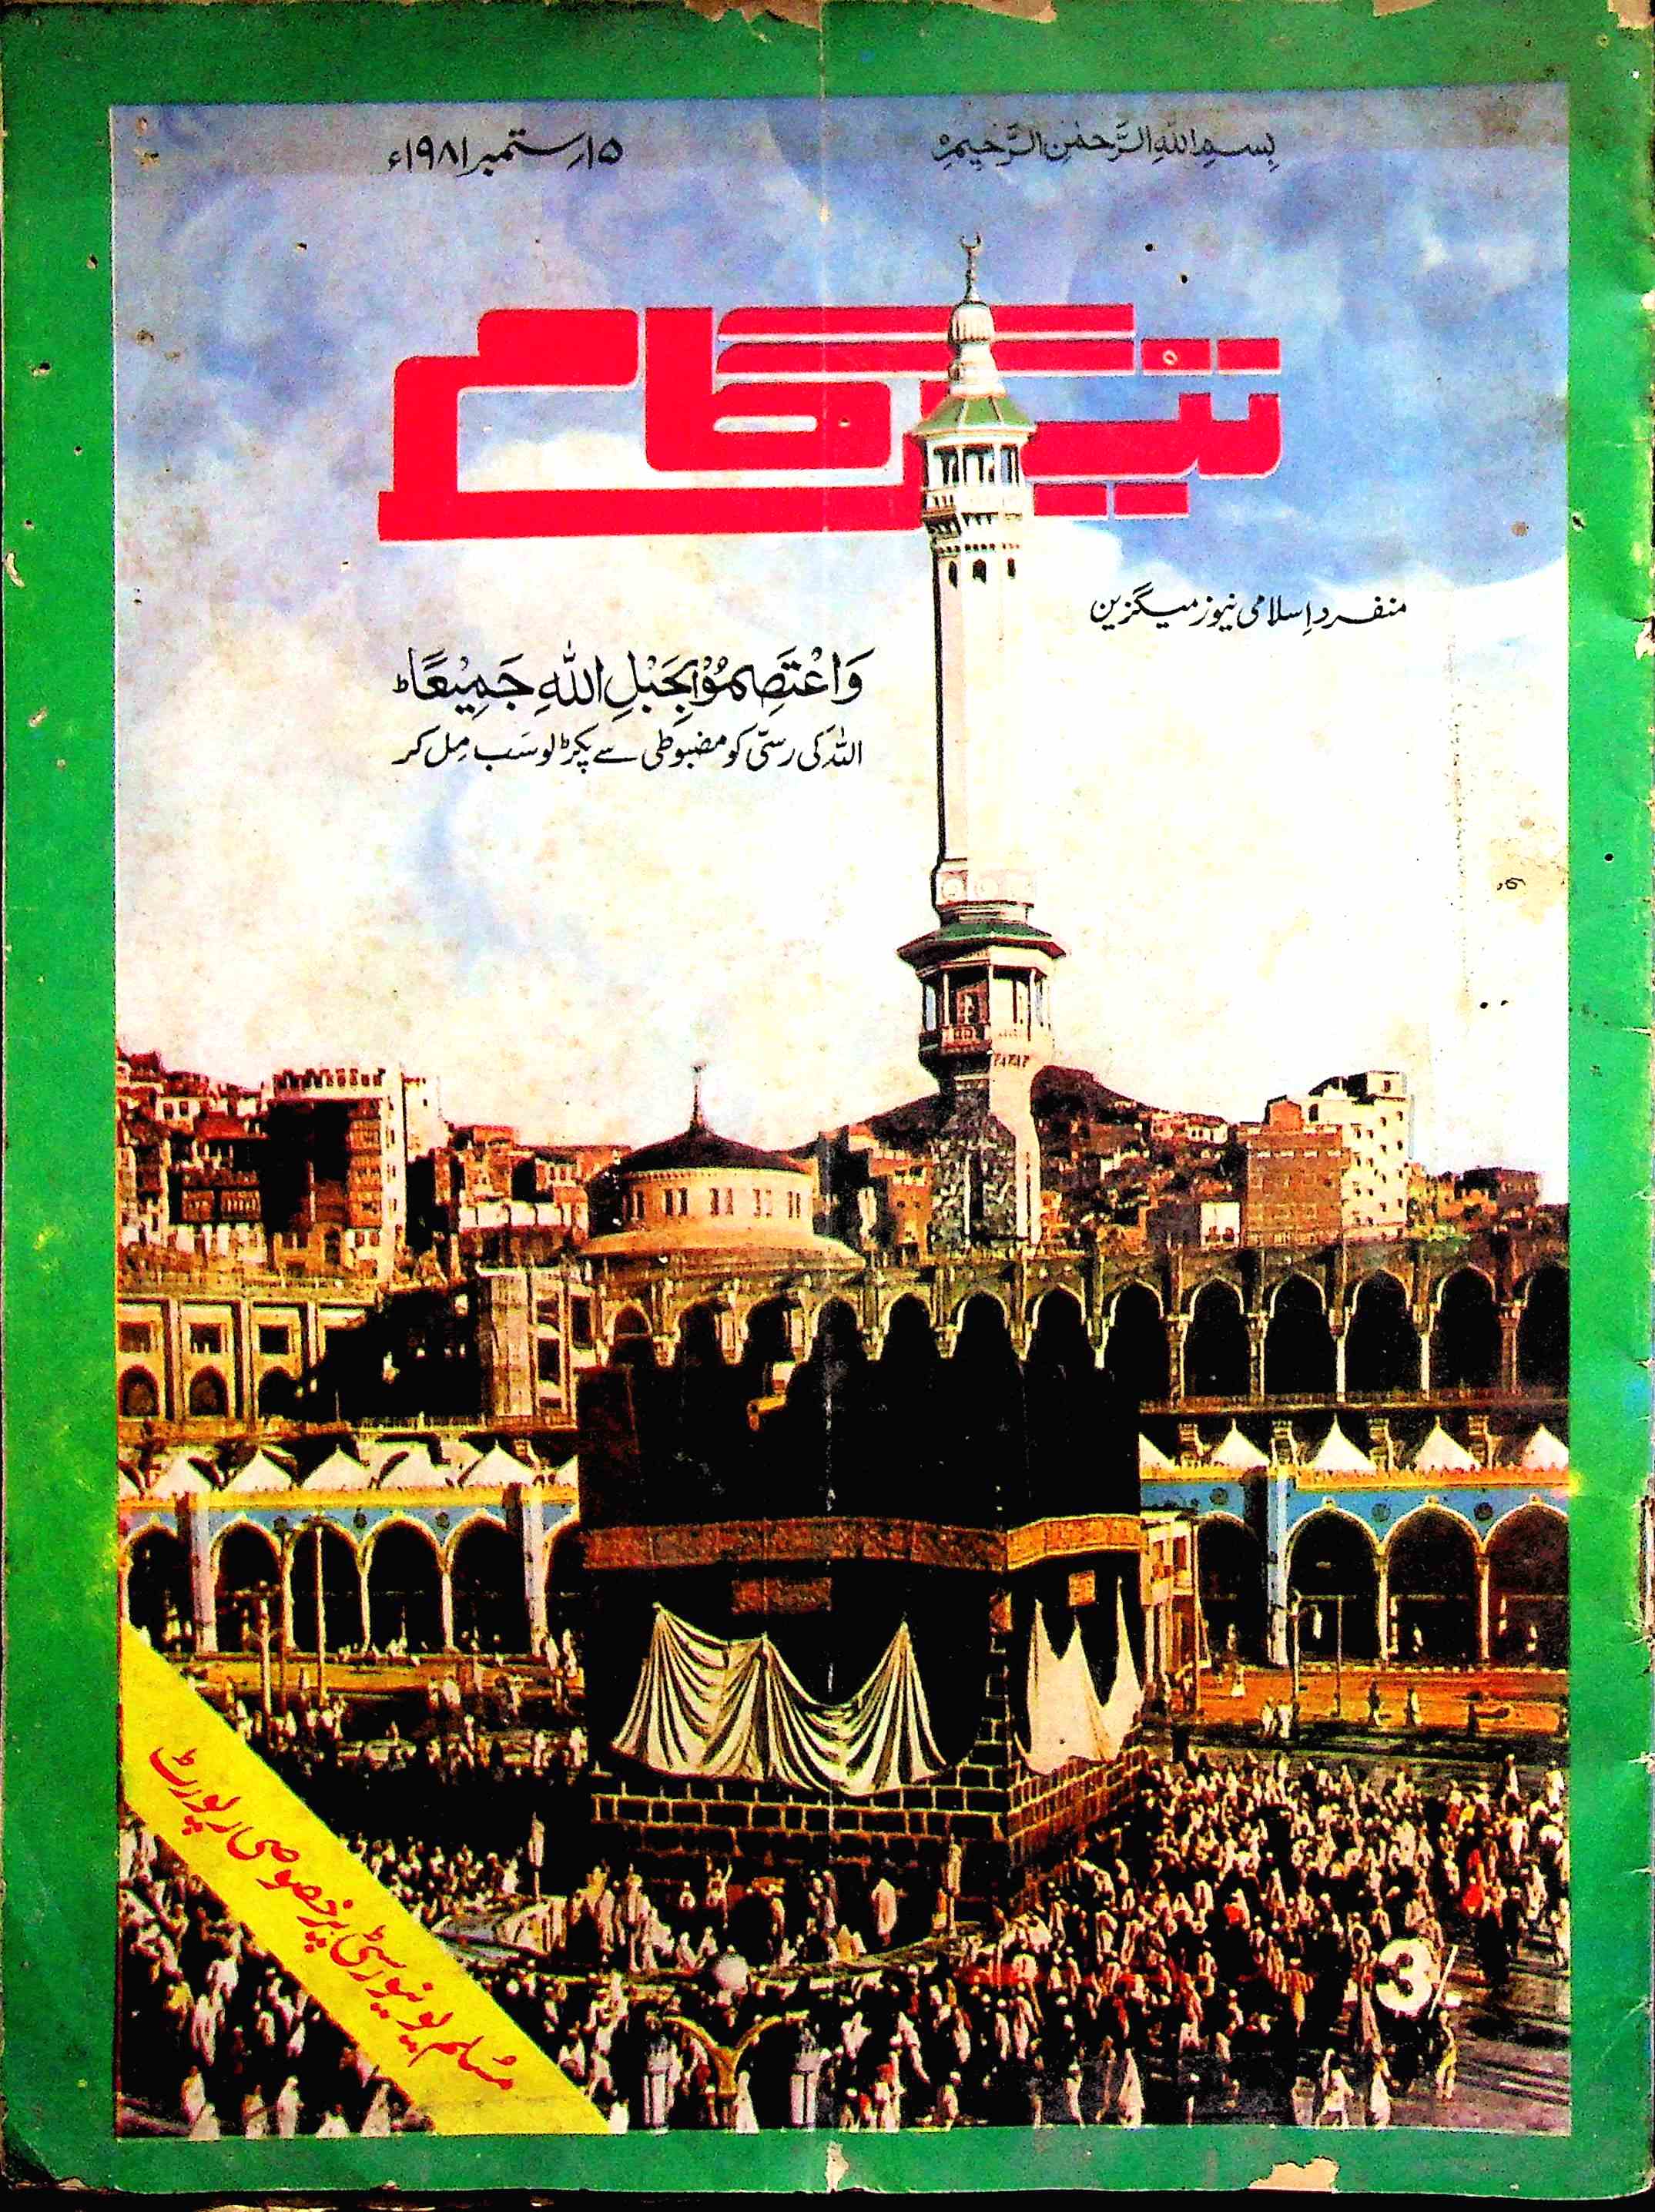 Tezgam 15 Sep To 30 Sep 1981